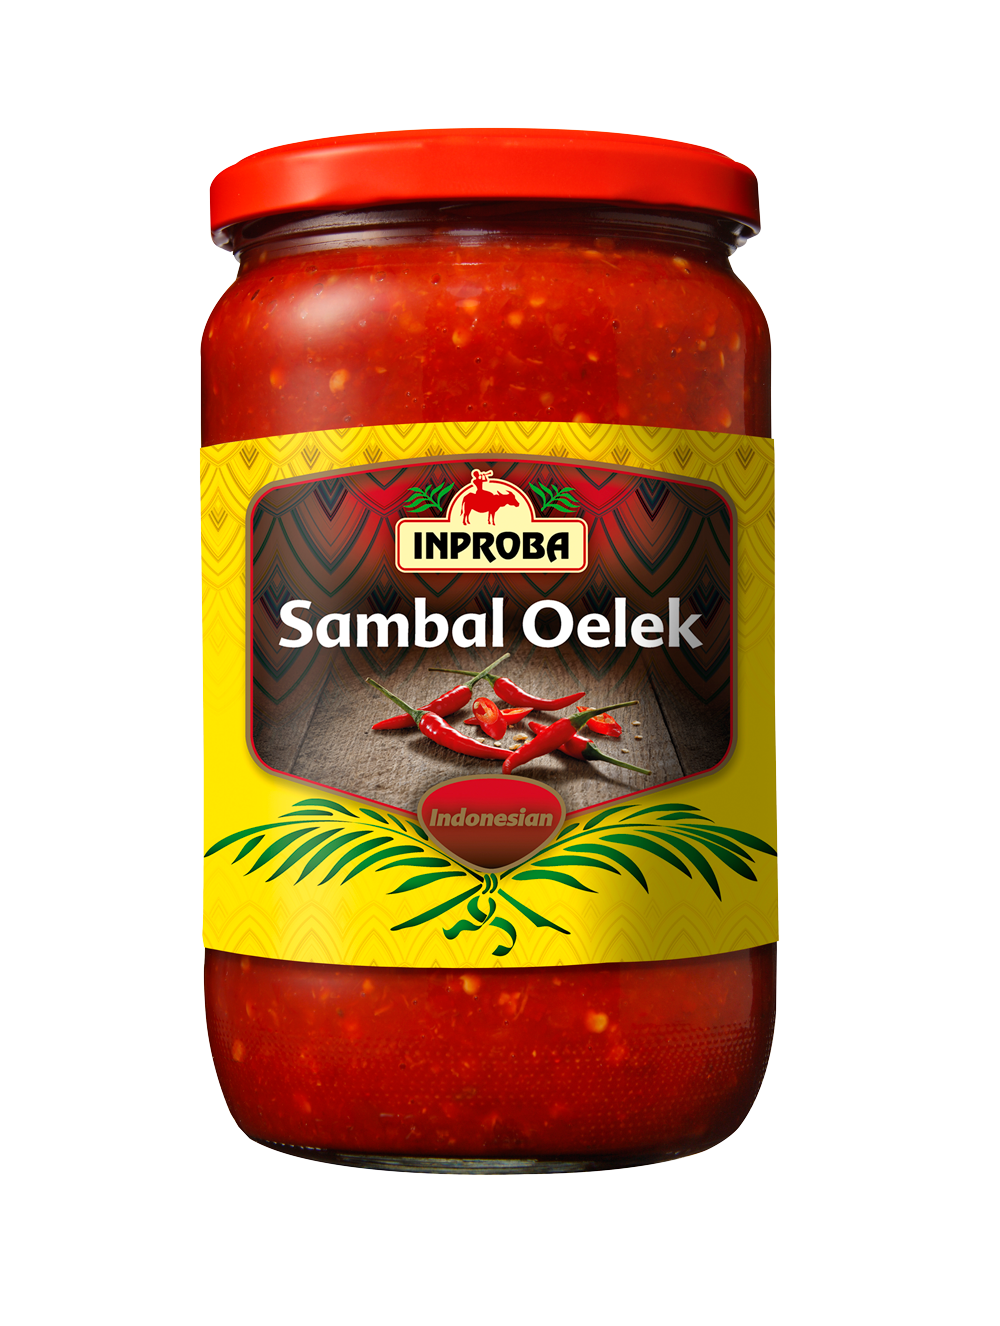 1. Sambal Oelek 750 g - Inproba - Oriental Foods